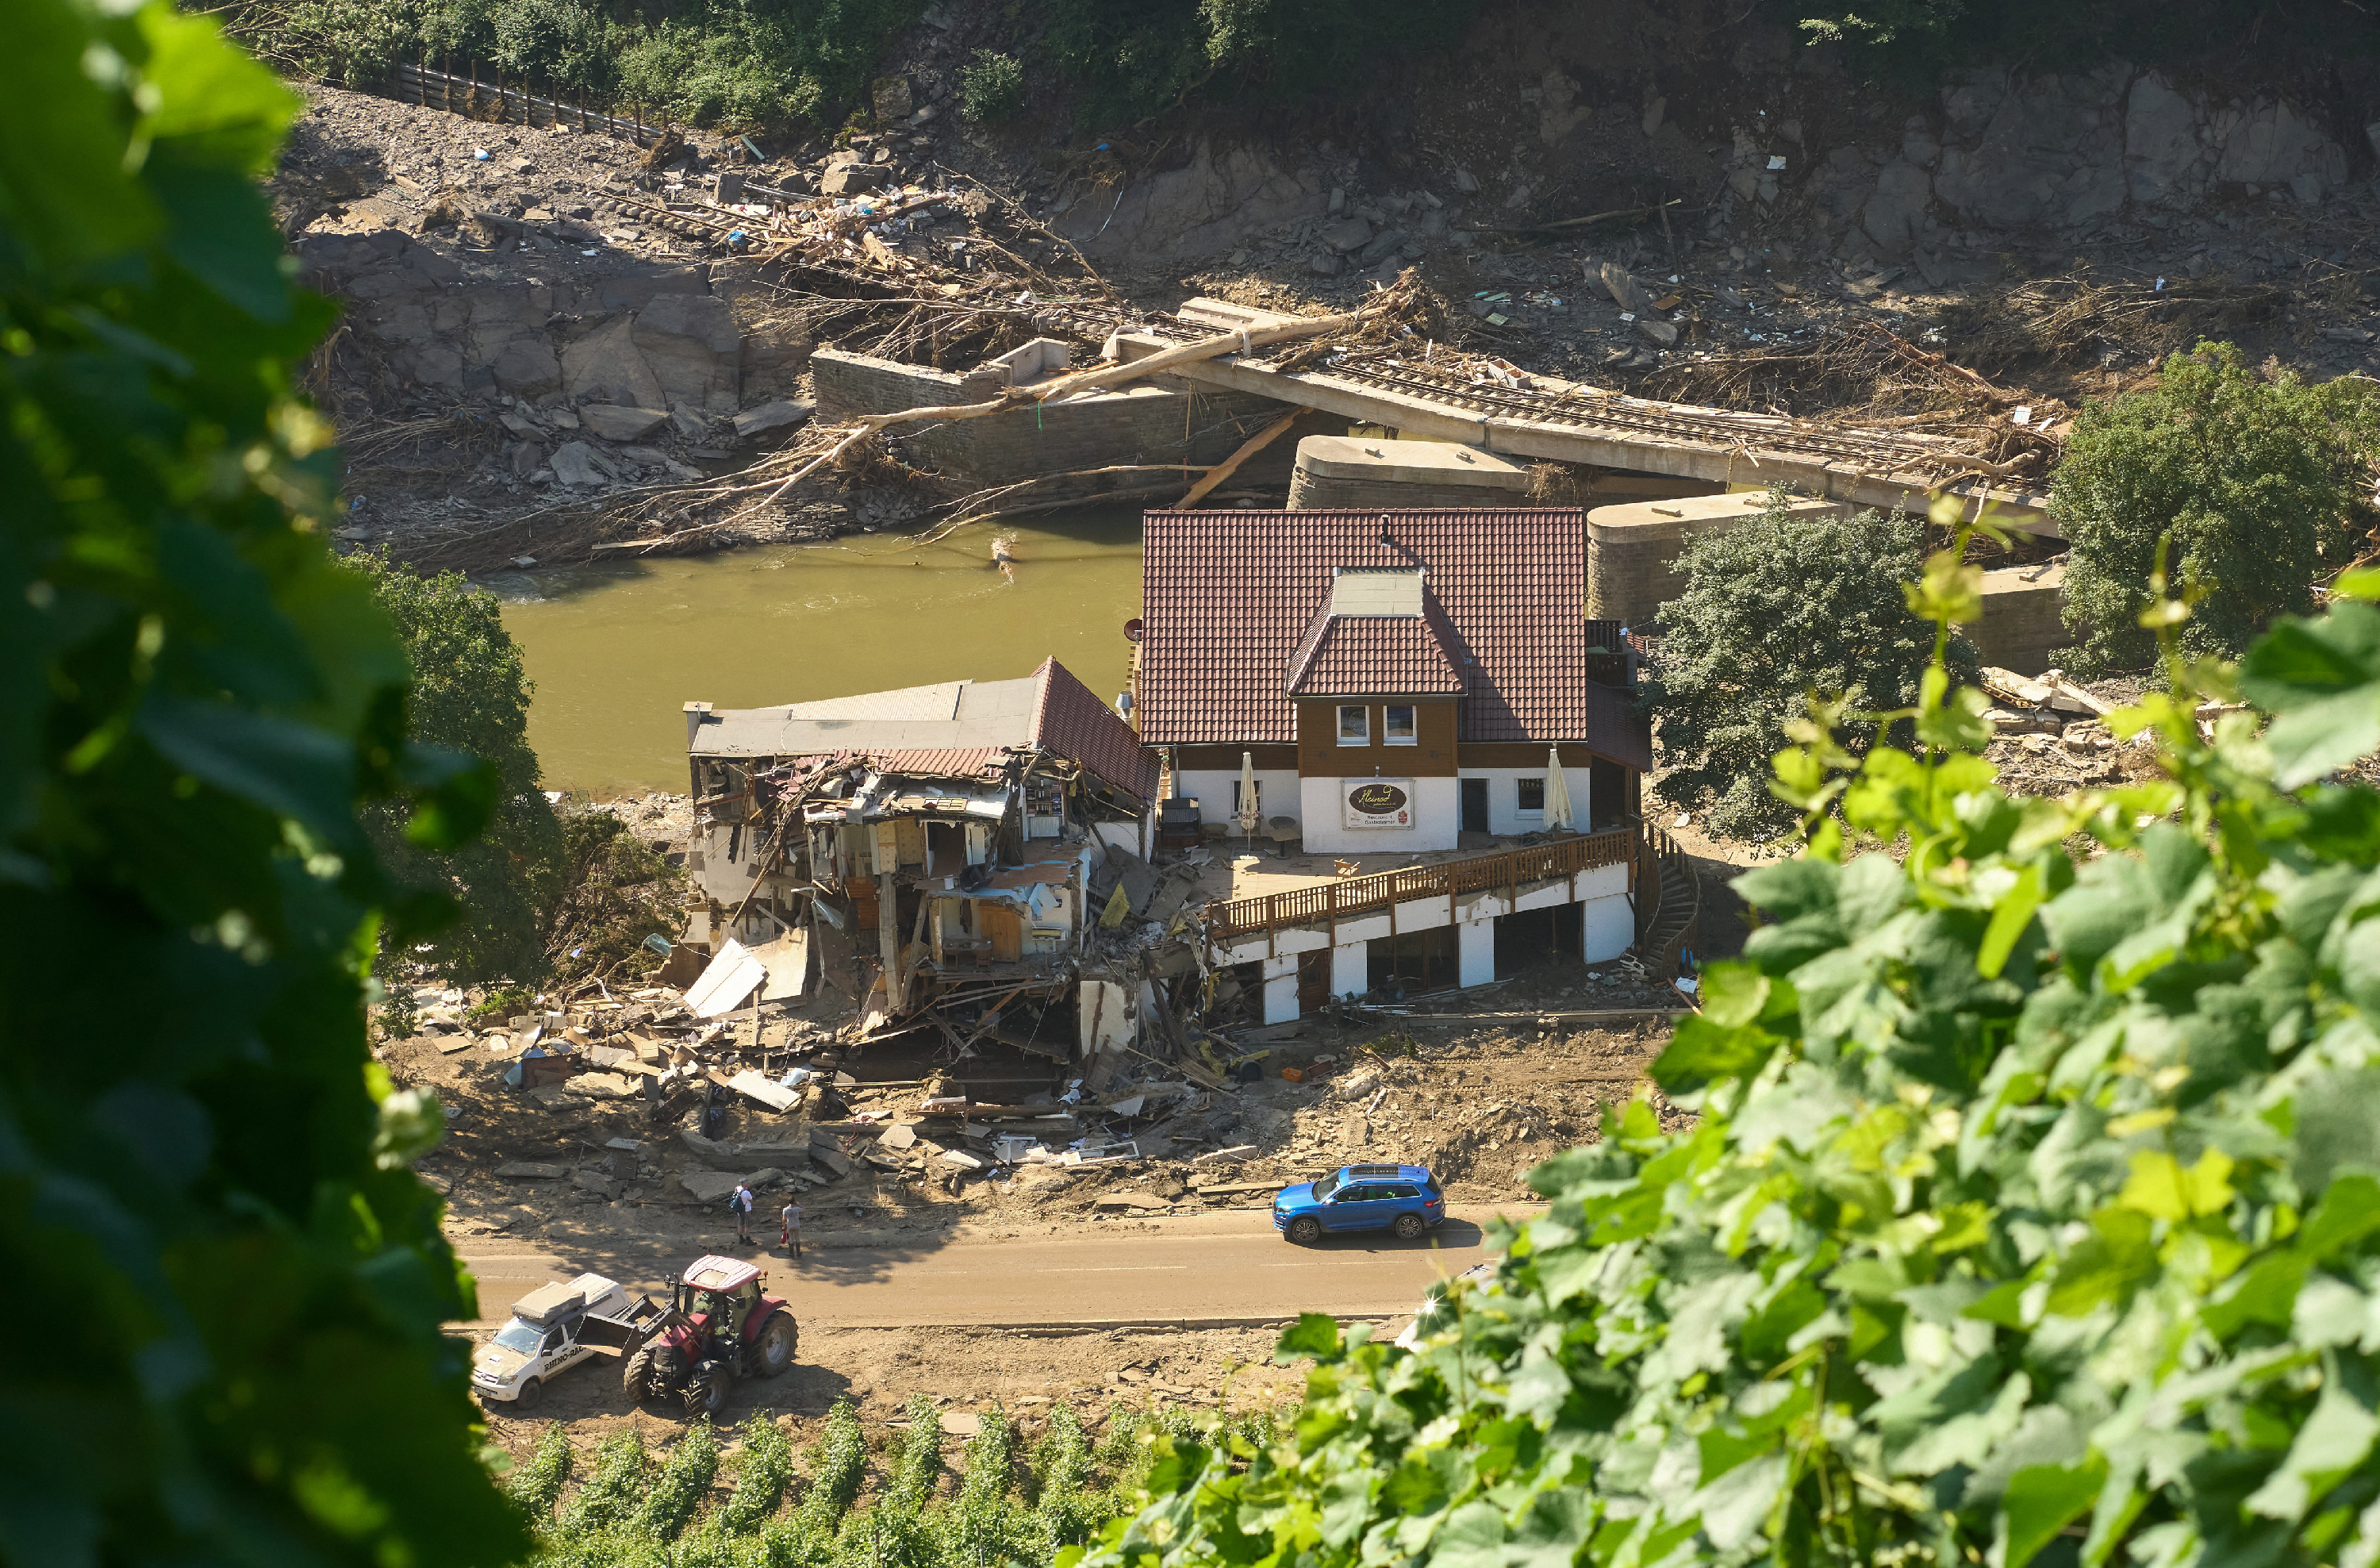 Brutális pusztítást végzett az árvíz, ezt kell helyrehozniuk a németeknek